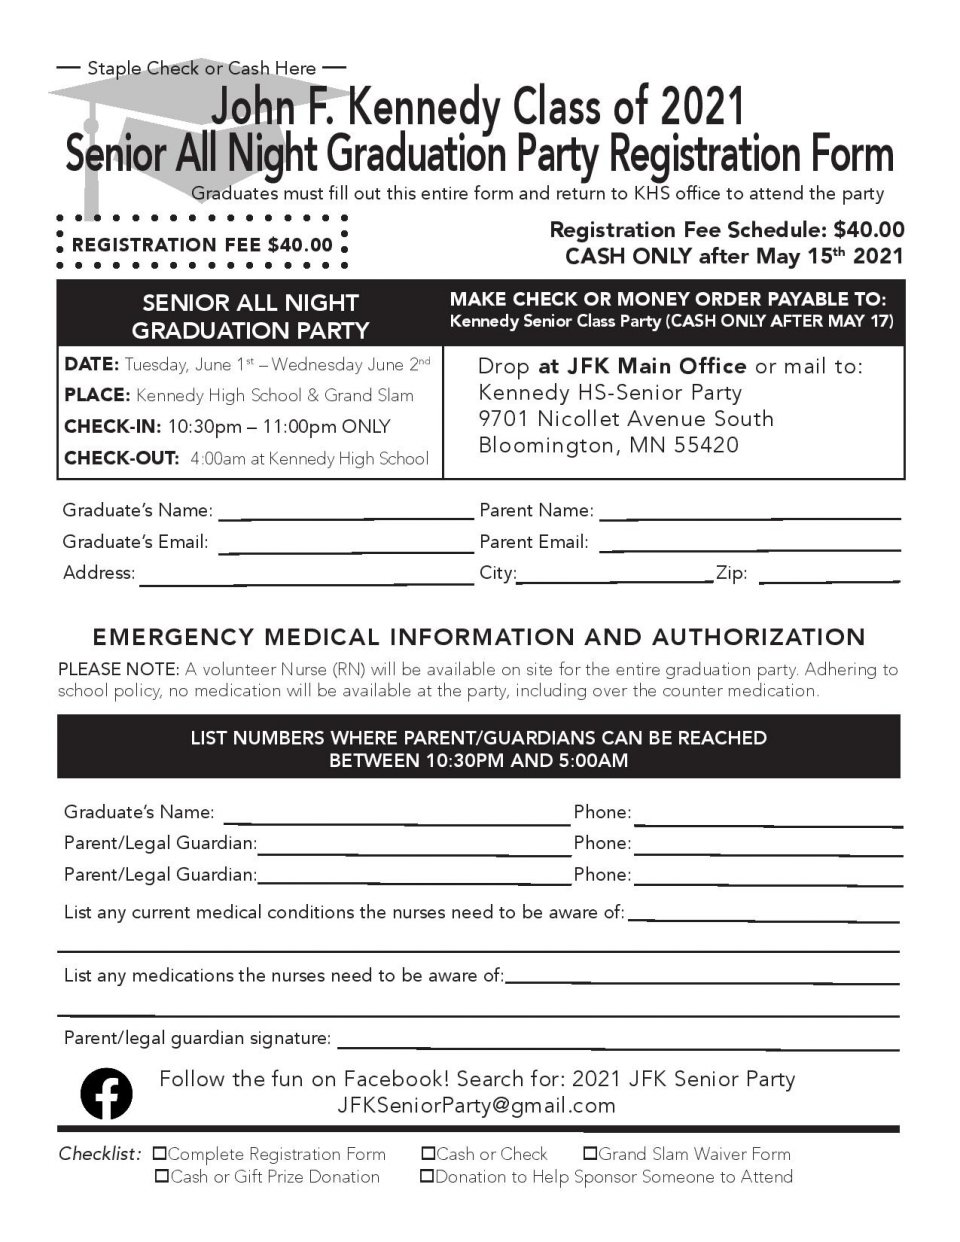 Senior All Night Party Registration Form